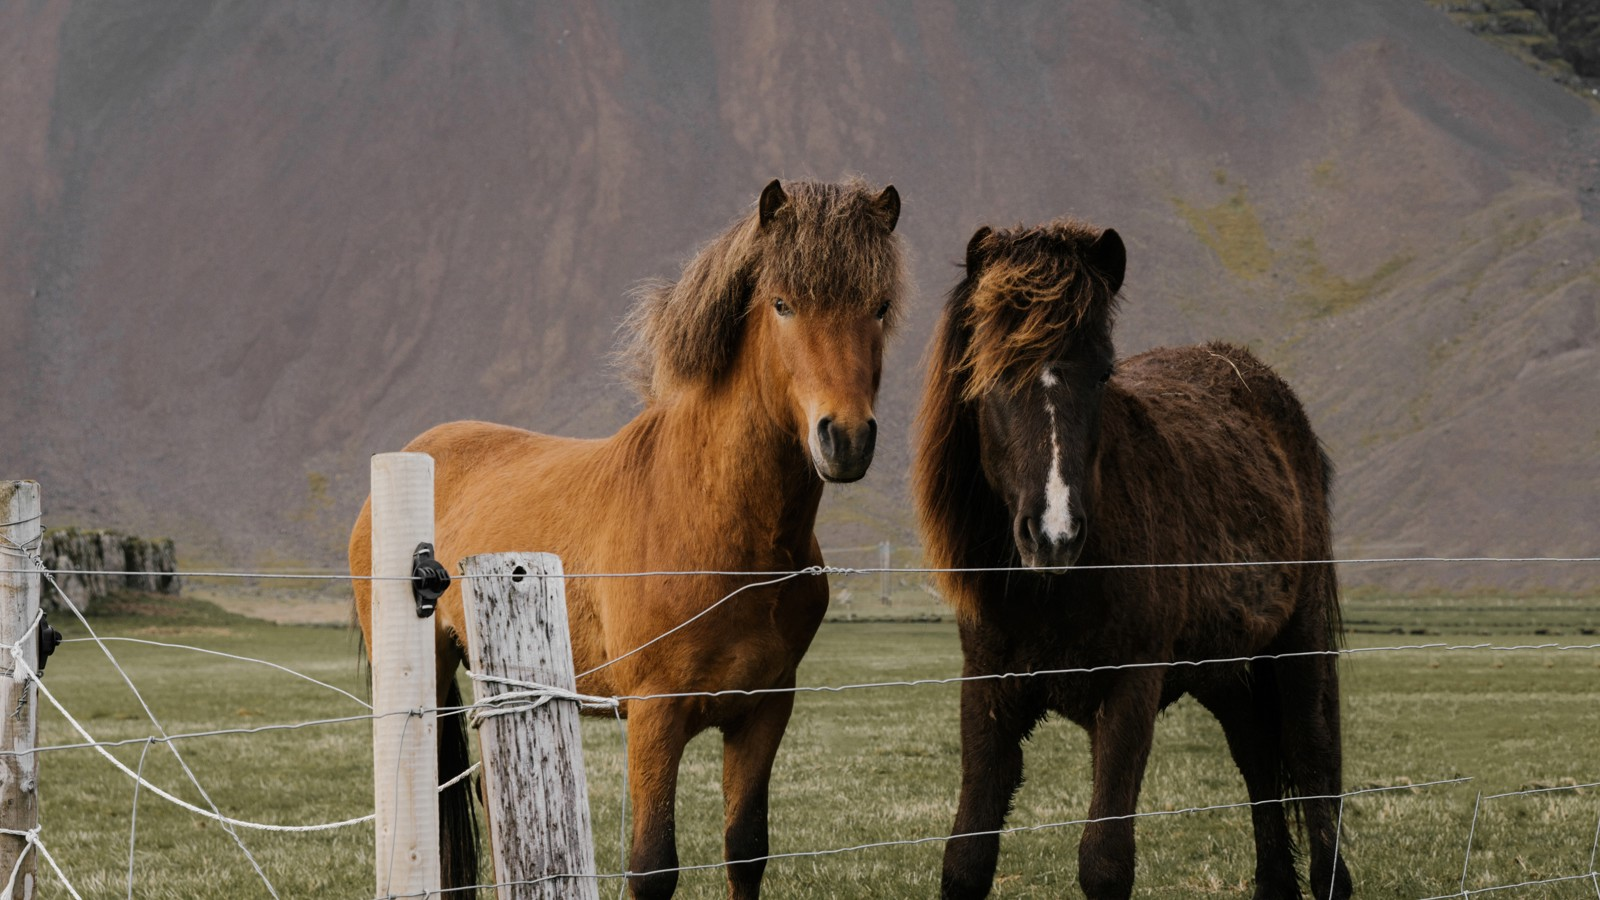 Two Icelandic horses